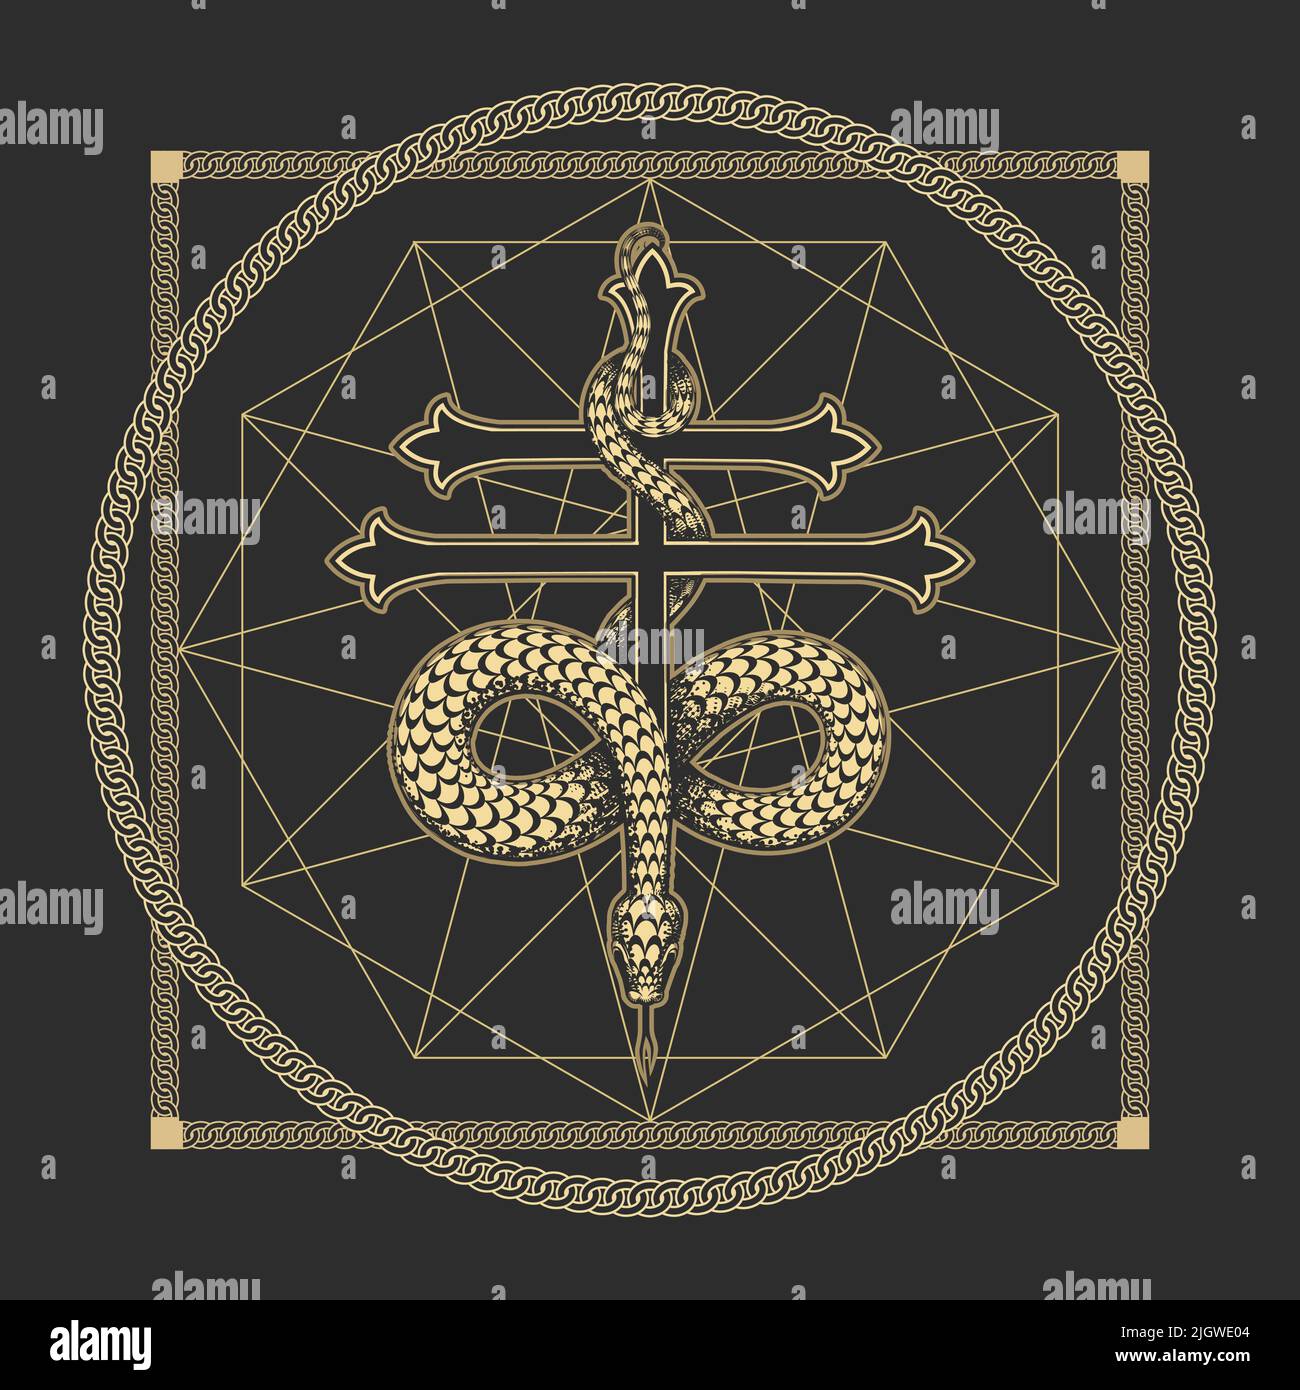 Okkultische medial lauschende esoterische Symbol der Weisheit Schlange am Kreuz. Vektorgrafik Stock Vektor